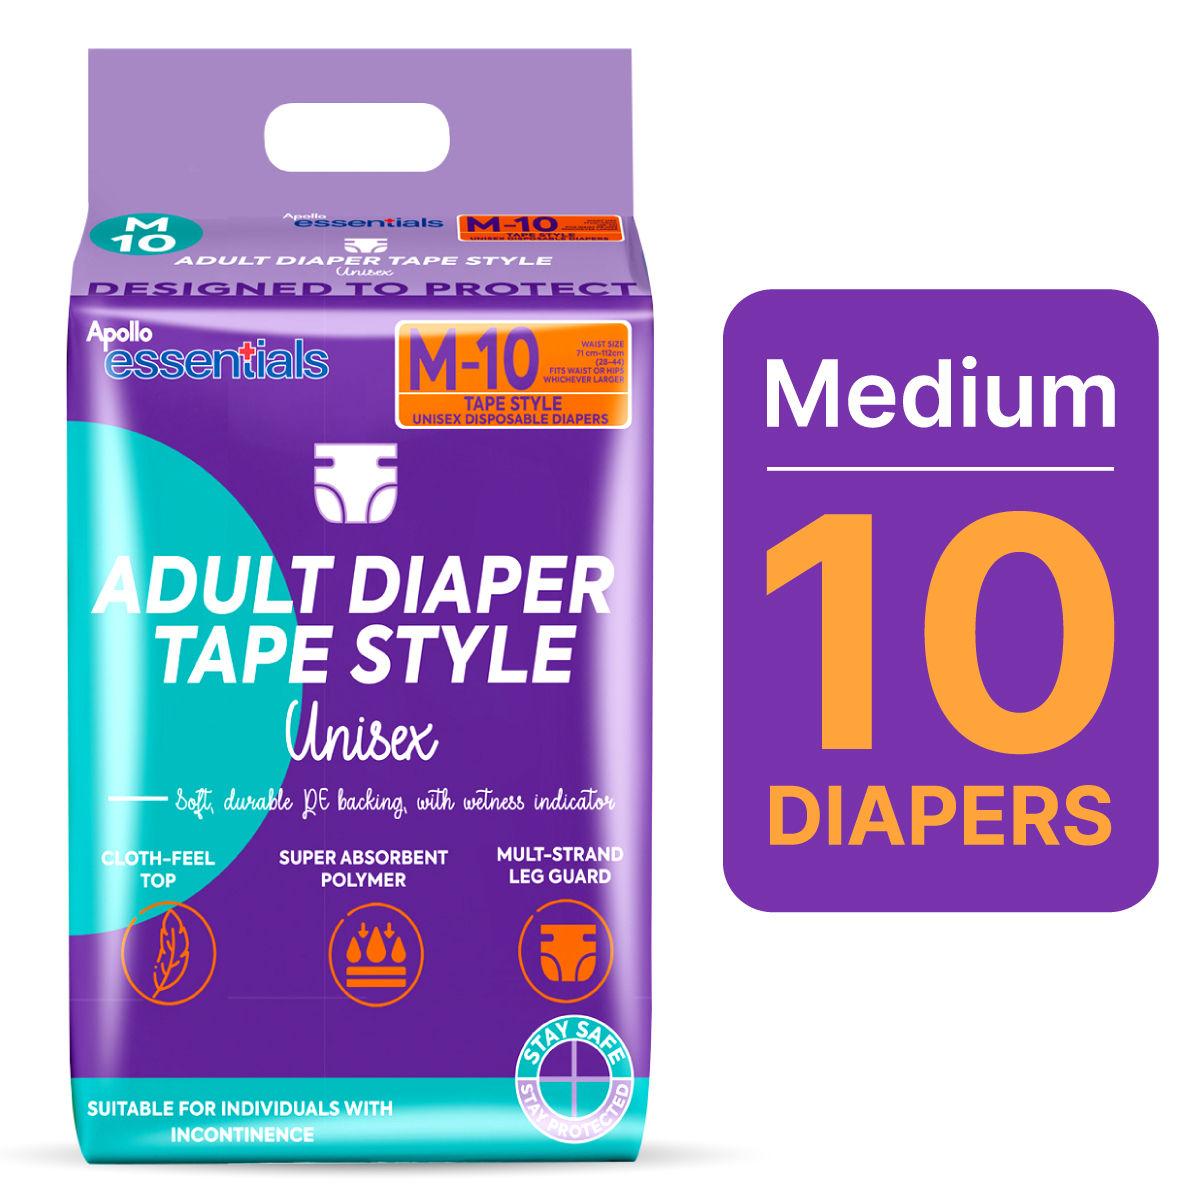 Buy Apollo Essentials Adult Diaper Tape Unisex Medium, 10 Count Online